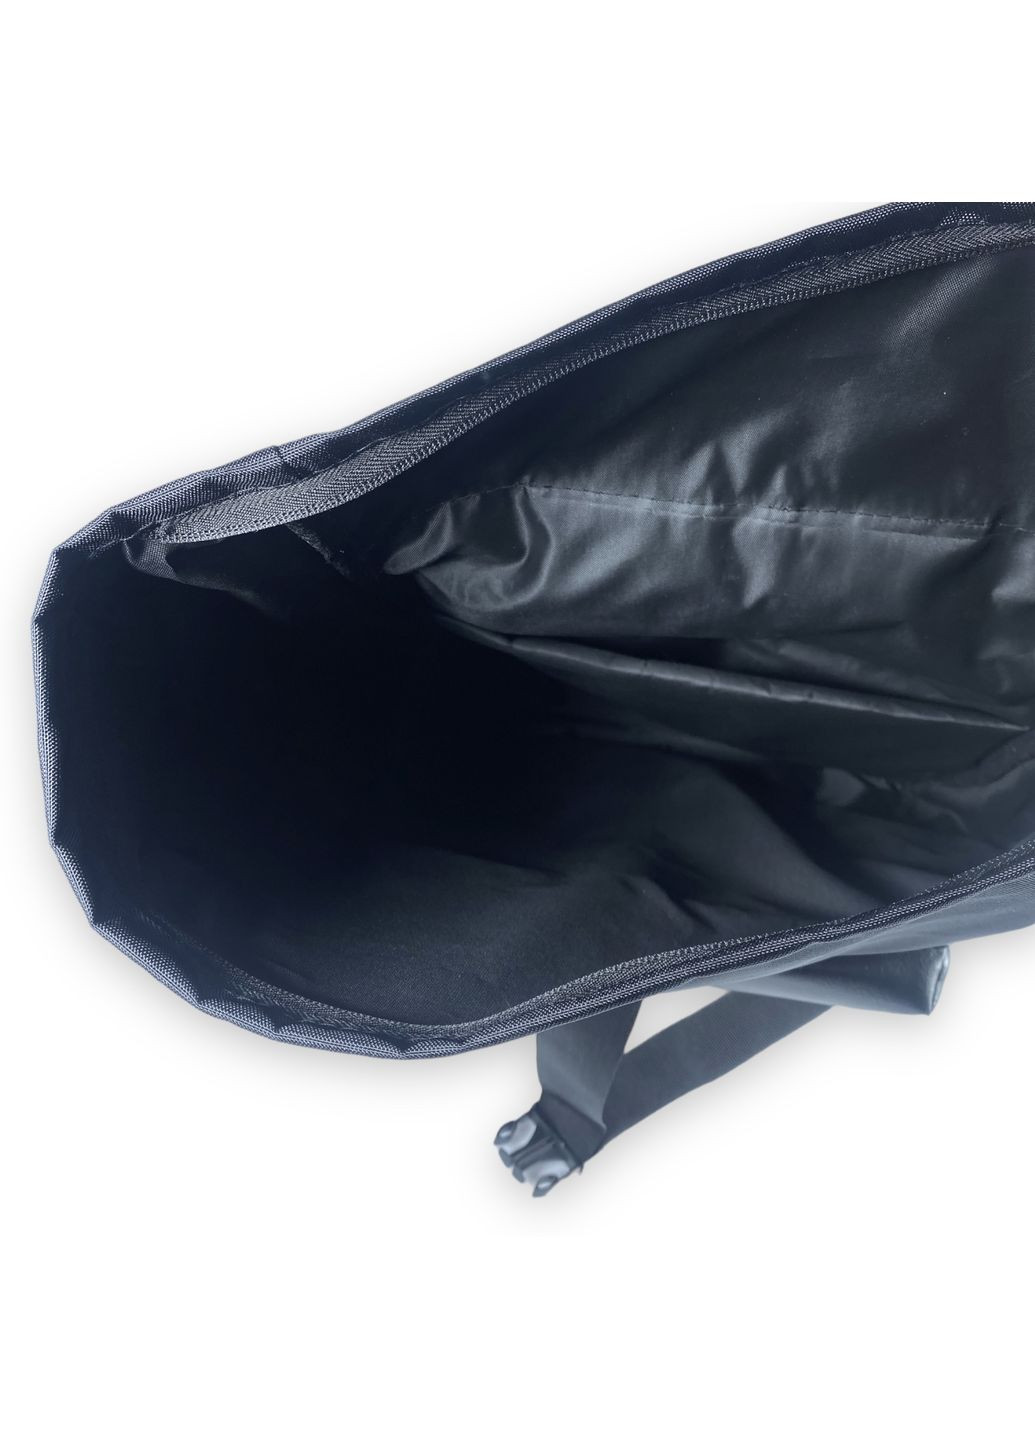 Міський рюкзак 10031 один відділ фронтальні бічні задні кишені розміри: 58*30*17, чорний BagWay (285814839)